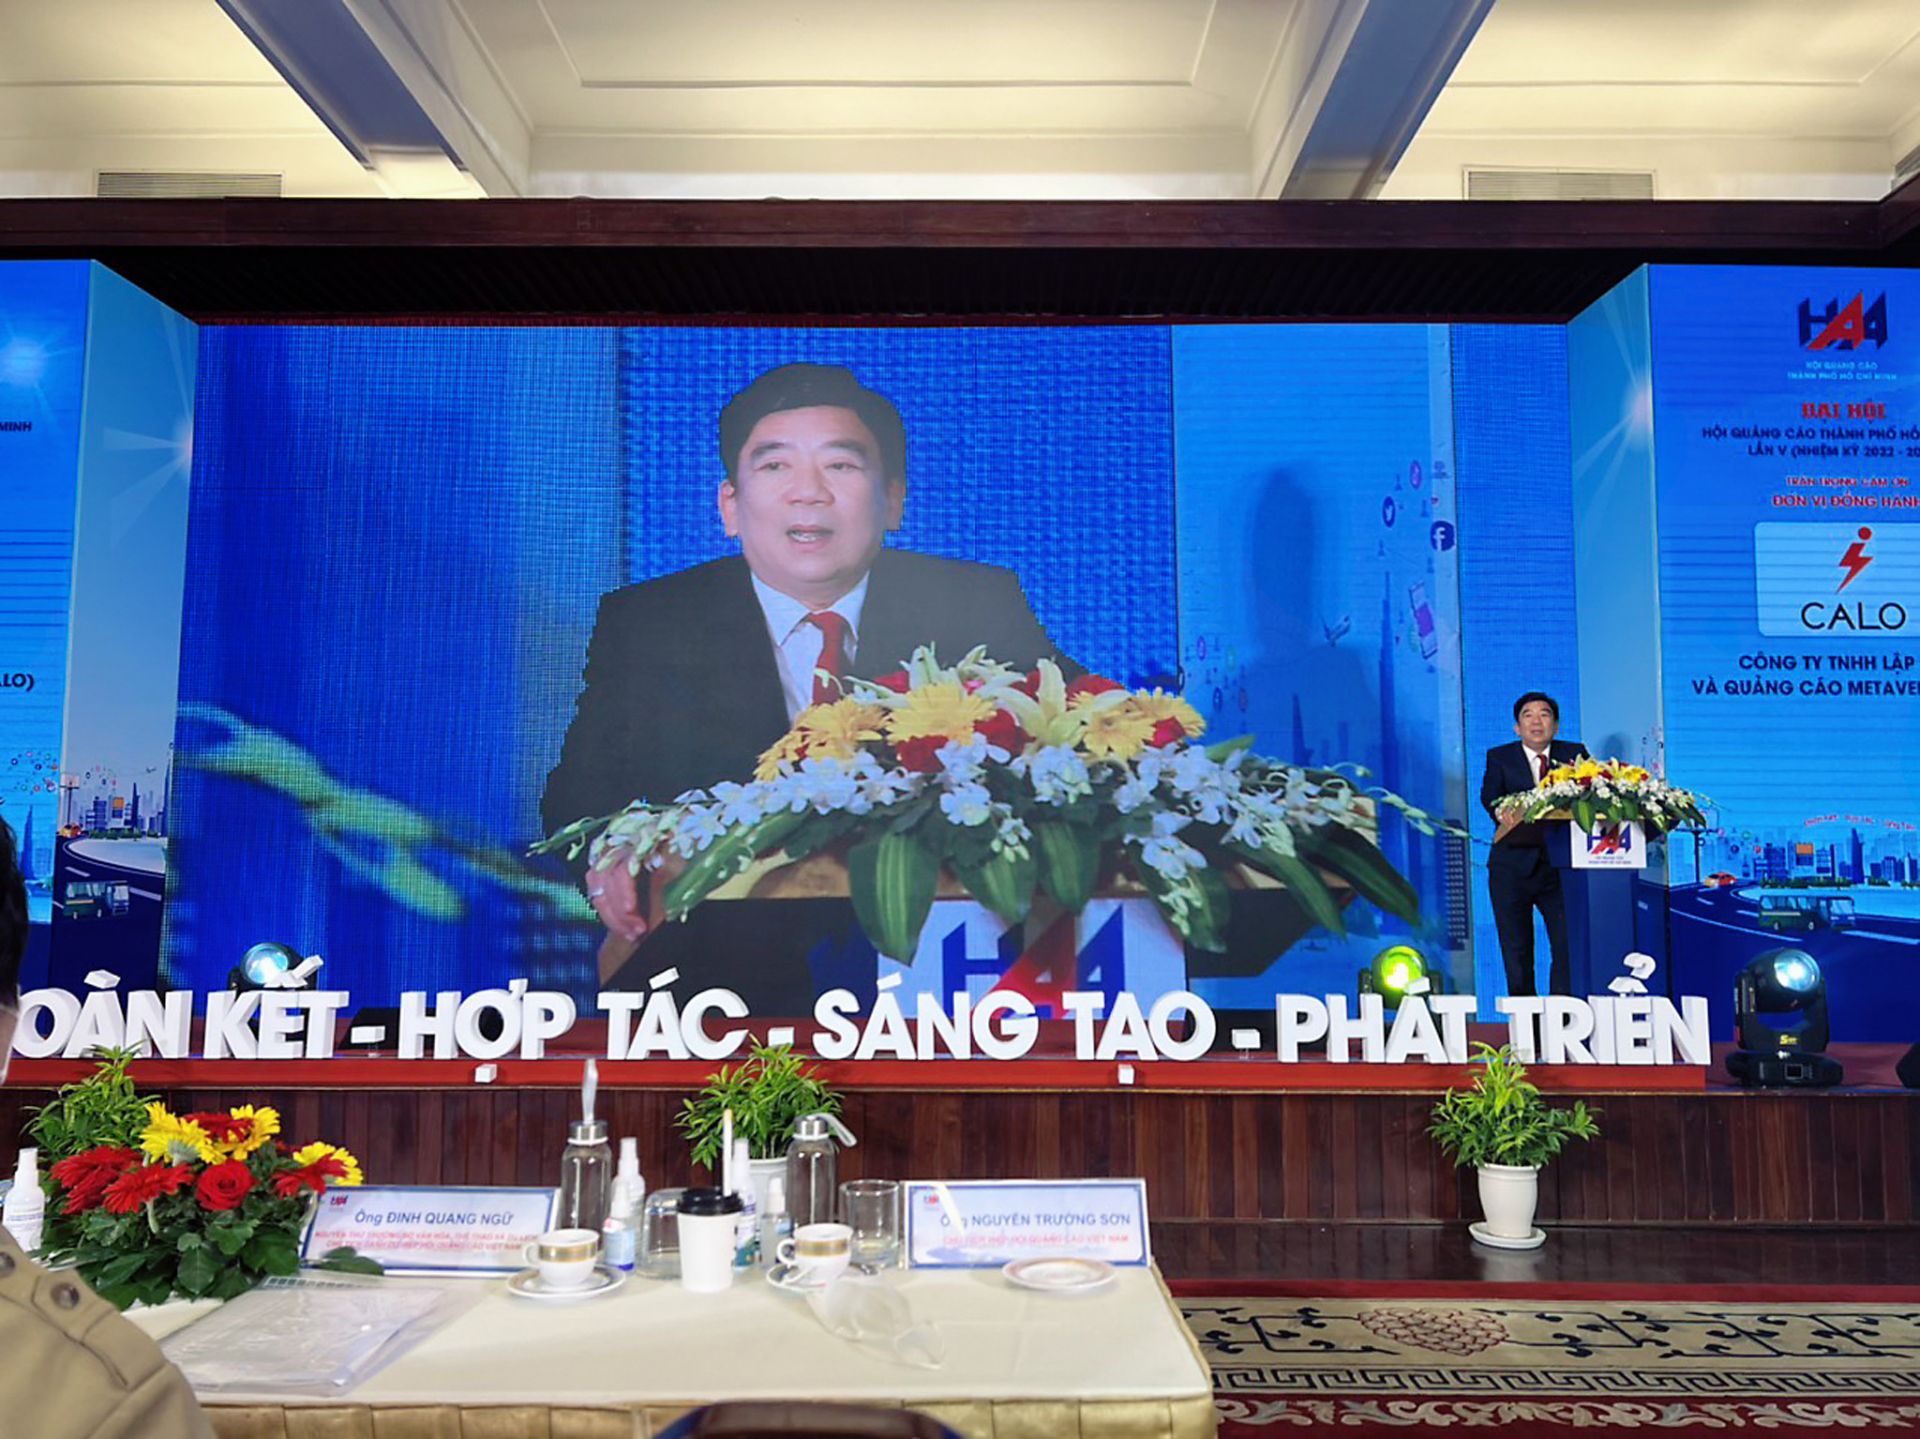 Ông Nguyễn Trường Sơn- Chủ tịch Hiệp hội Quảng cáo Việt Nam (VAA) khóa V, nhiệm kỳ 2021-2026